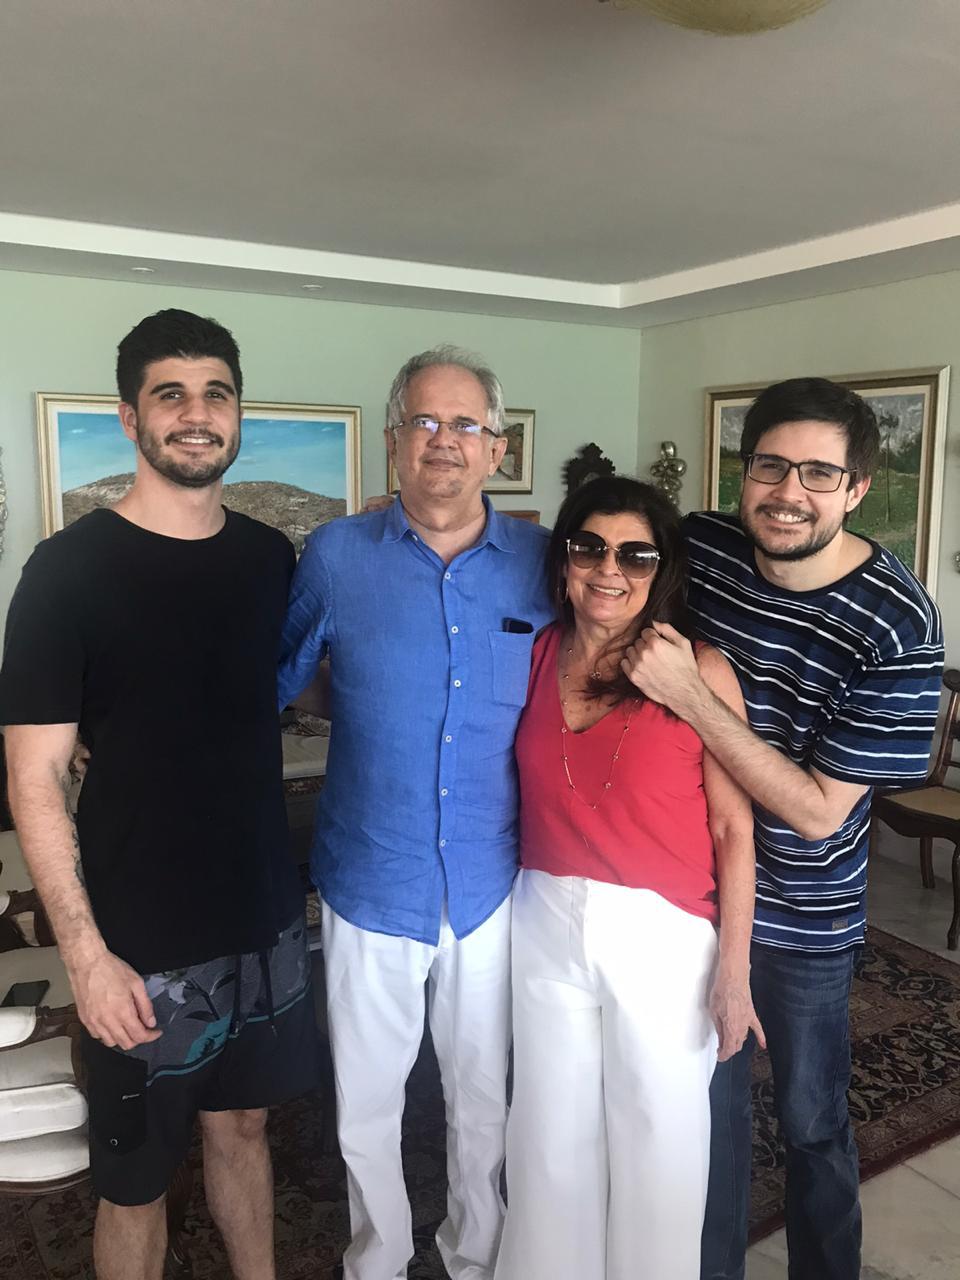 O irmão Fabinho, os pais Tarcísio e Cynthia, felizes com a chegada e presença de Felipe Barros